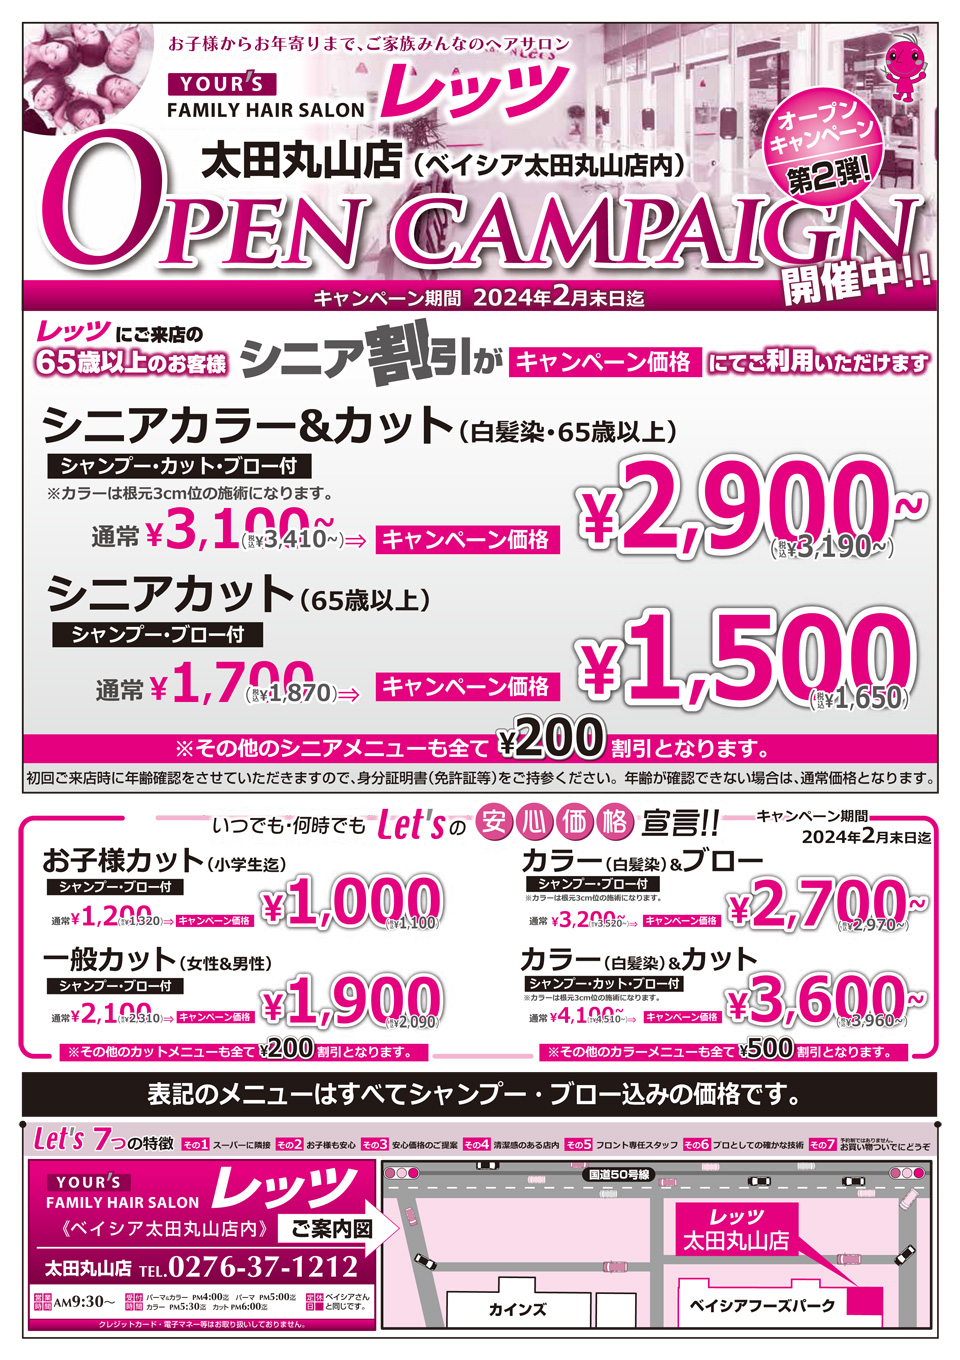 太田丸山店 オープンキャンペーン